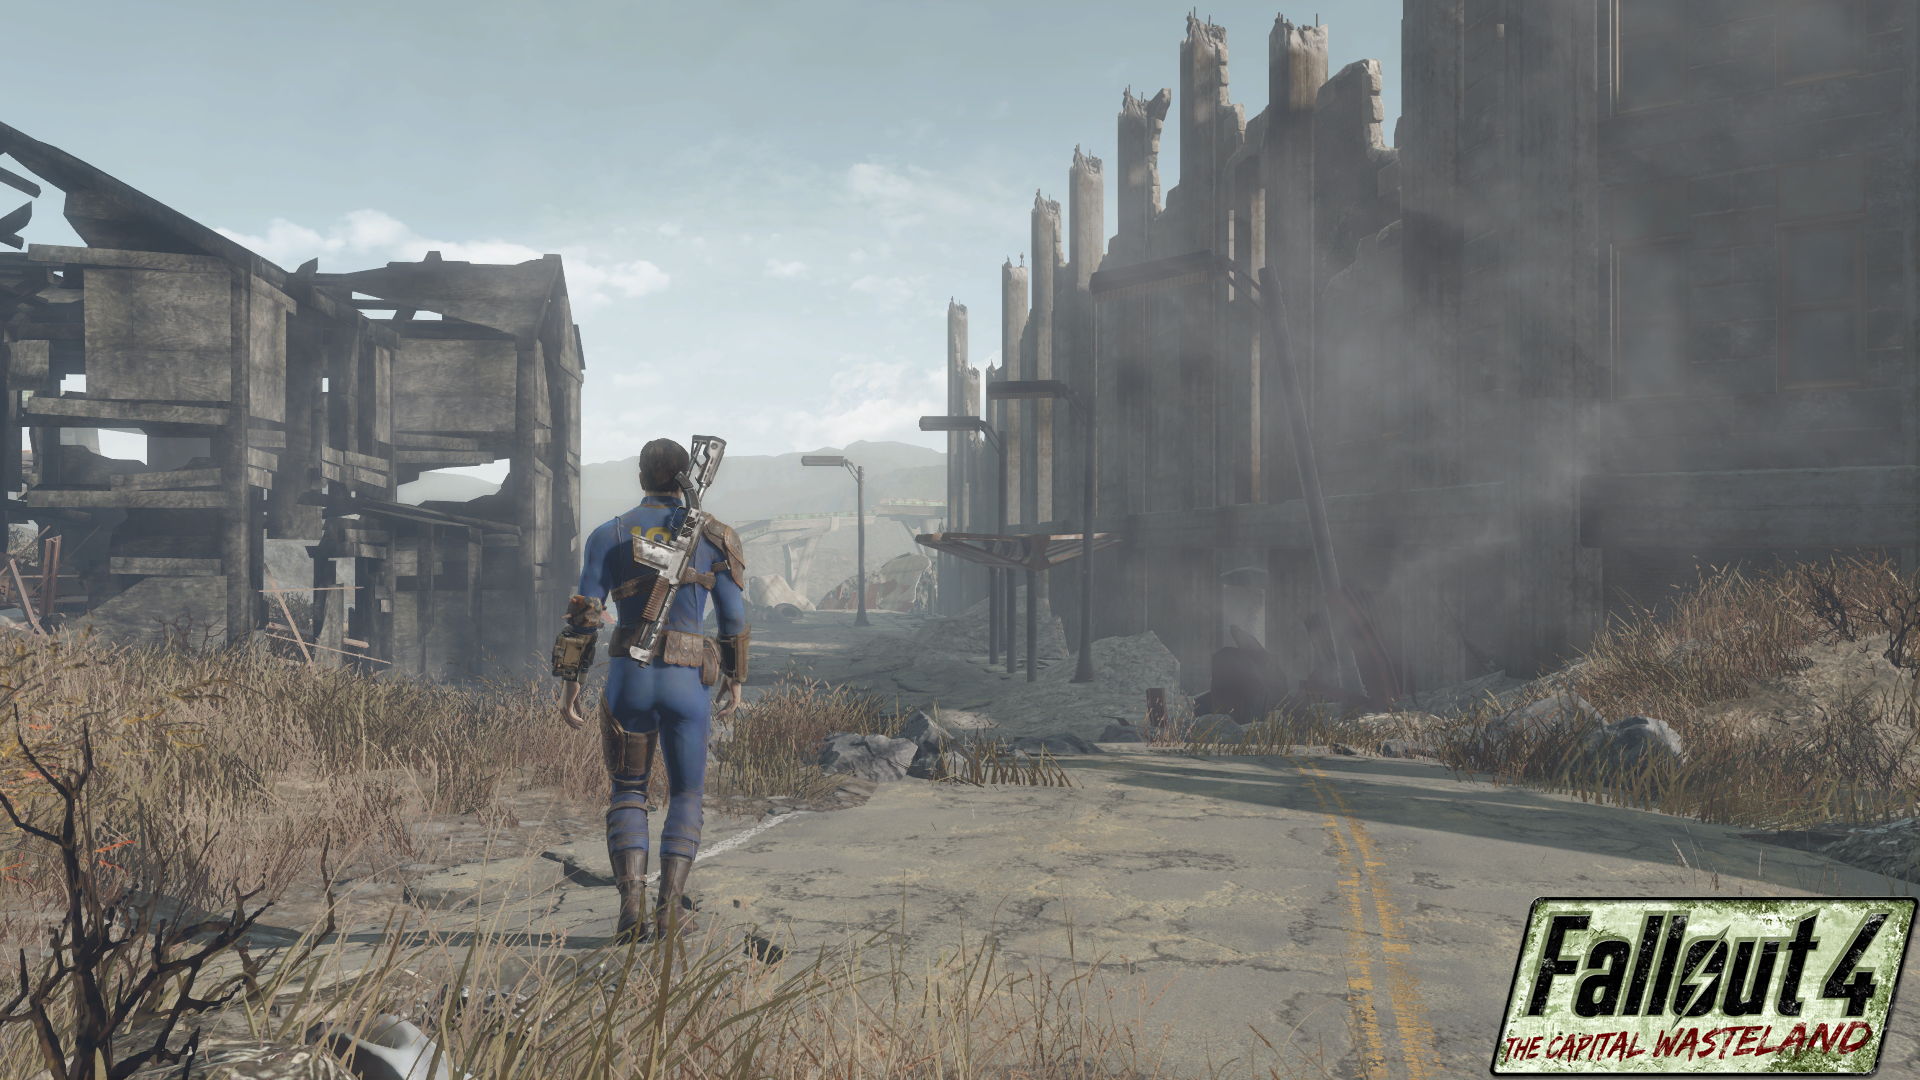 В каком году происходят события фоллаут. Ремейк Fallout 3. Фоллаут 4. Фоллаут 4 Столичная Пустошь. Fallout 3 Capital Wasteland.